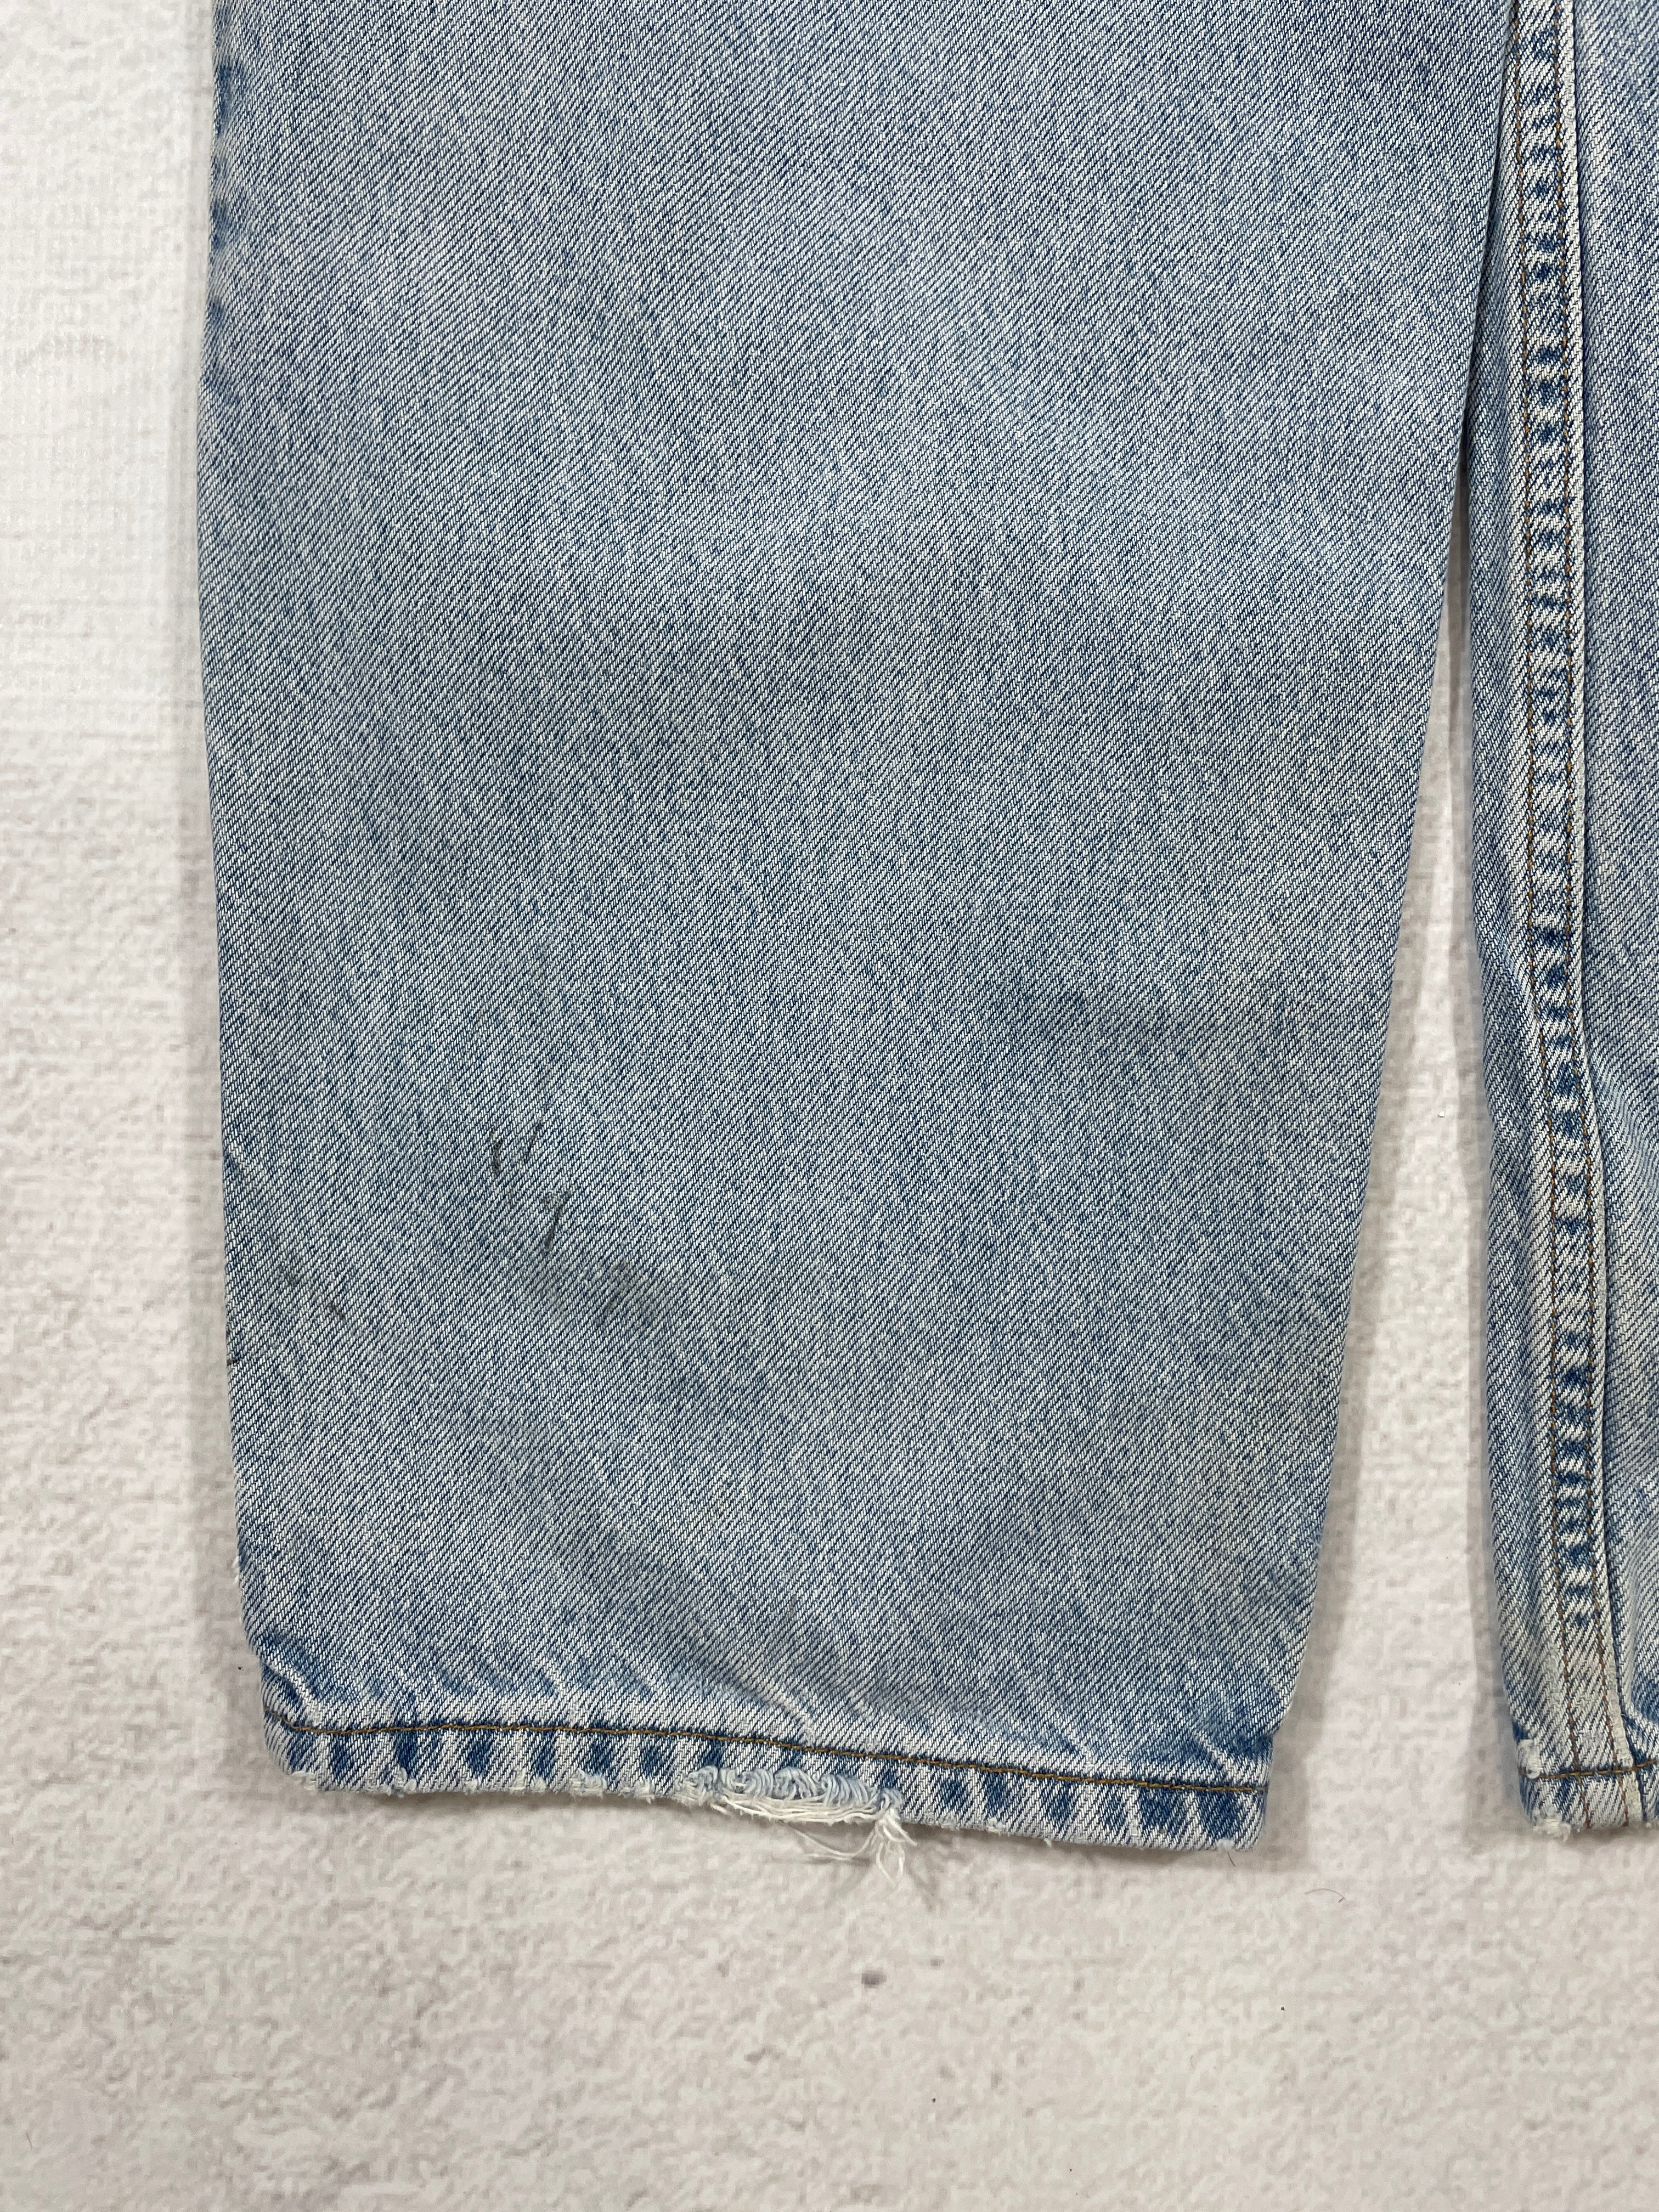 Vintage Levis Jeans - Men's 38Wx30L